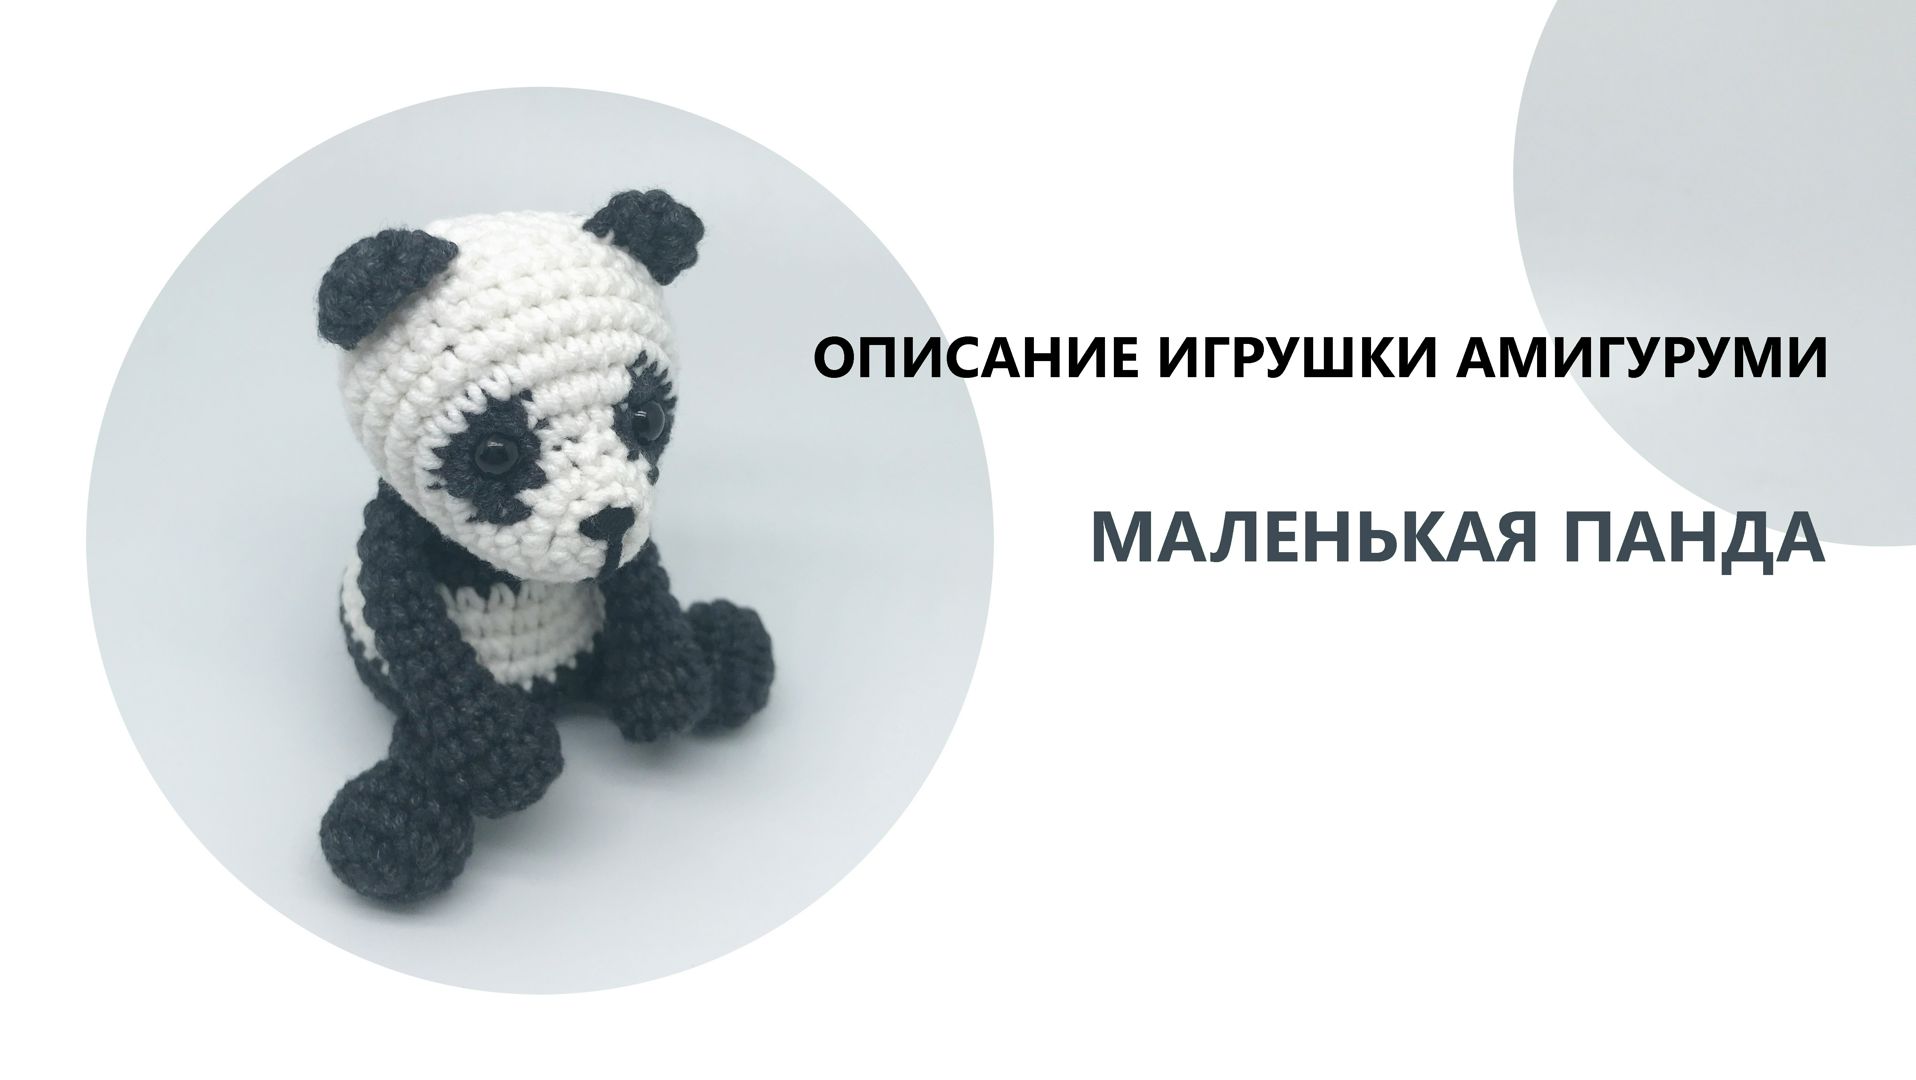 Панды крючком - 44 бесплатных схем и описаний игрушек амигуруми